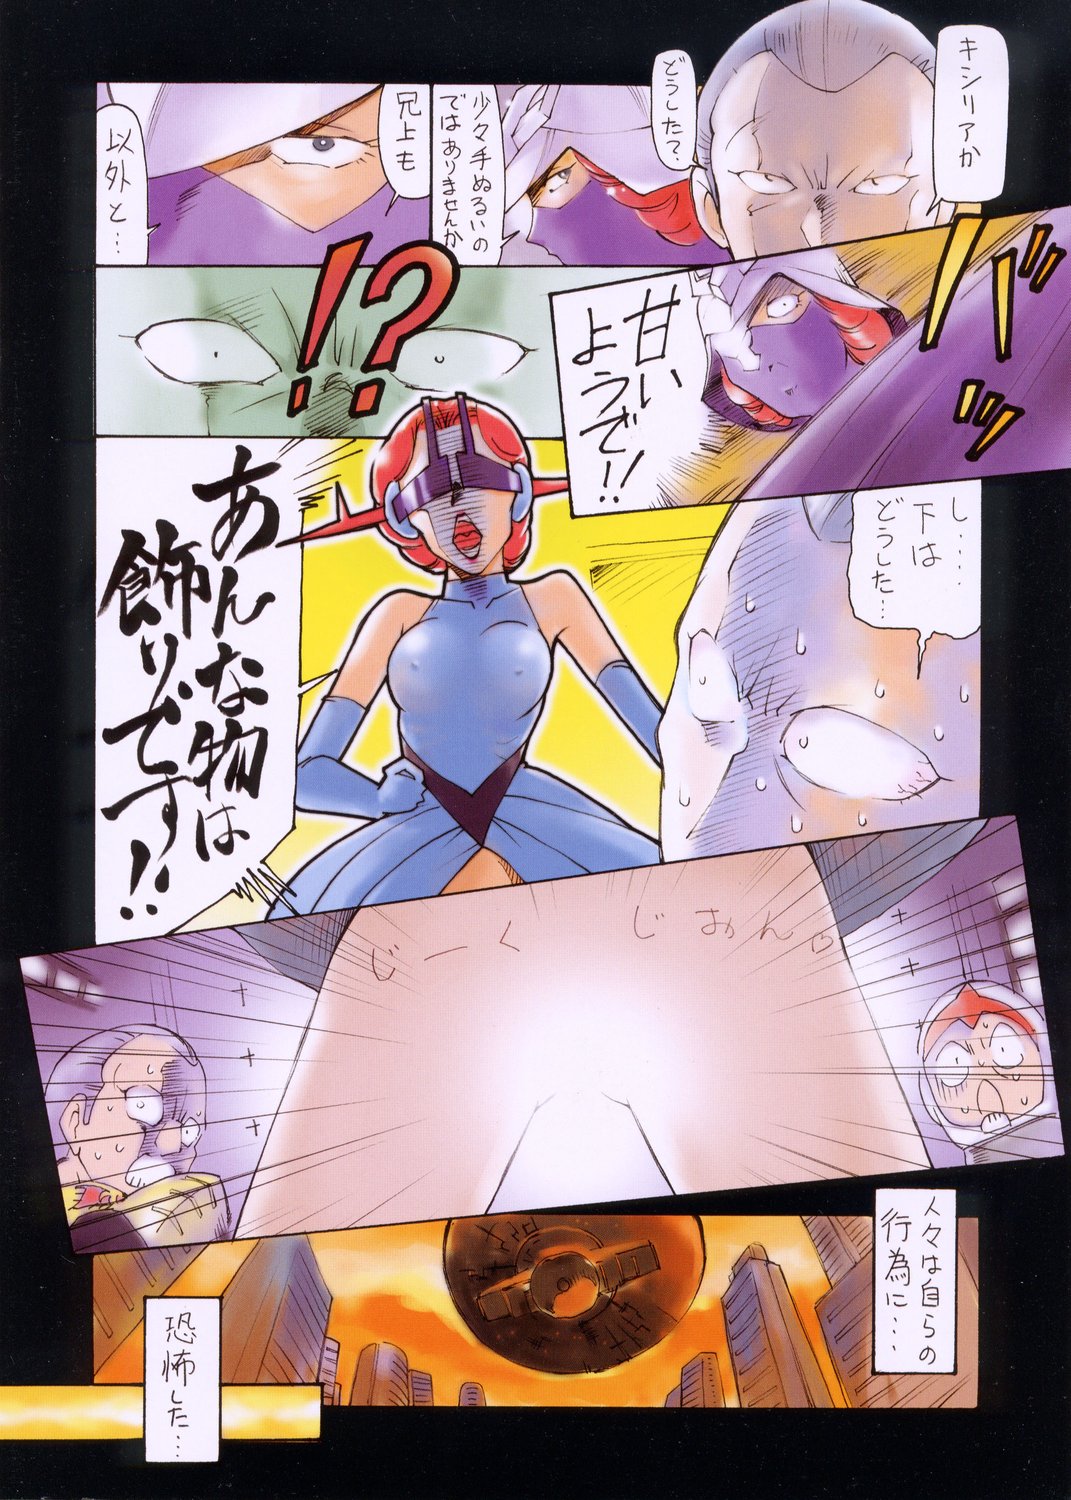 (CR34) [UGO (Ichiba Koushi)] GUNDAM THE DOHJIN II Seira-san to mokuba Ai Senshi Hen (Kidou Senshi Gundam) (Cレヴォ34) [UGO (いちば仔牛)] GUNDAM THE DOHJIN II  セイラさんともくば 哀戦士編 (機動戦士ガンダム)